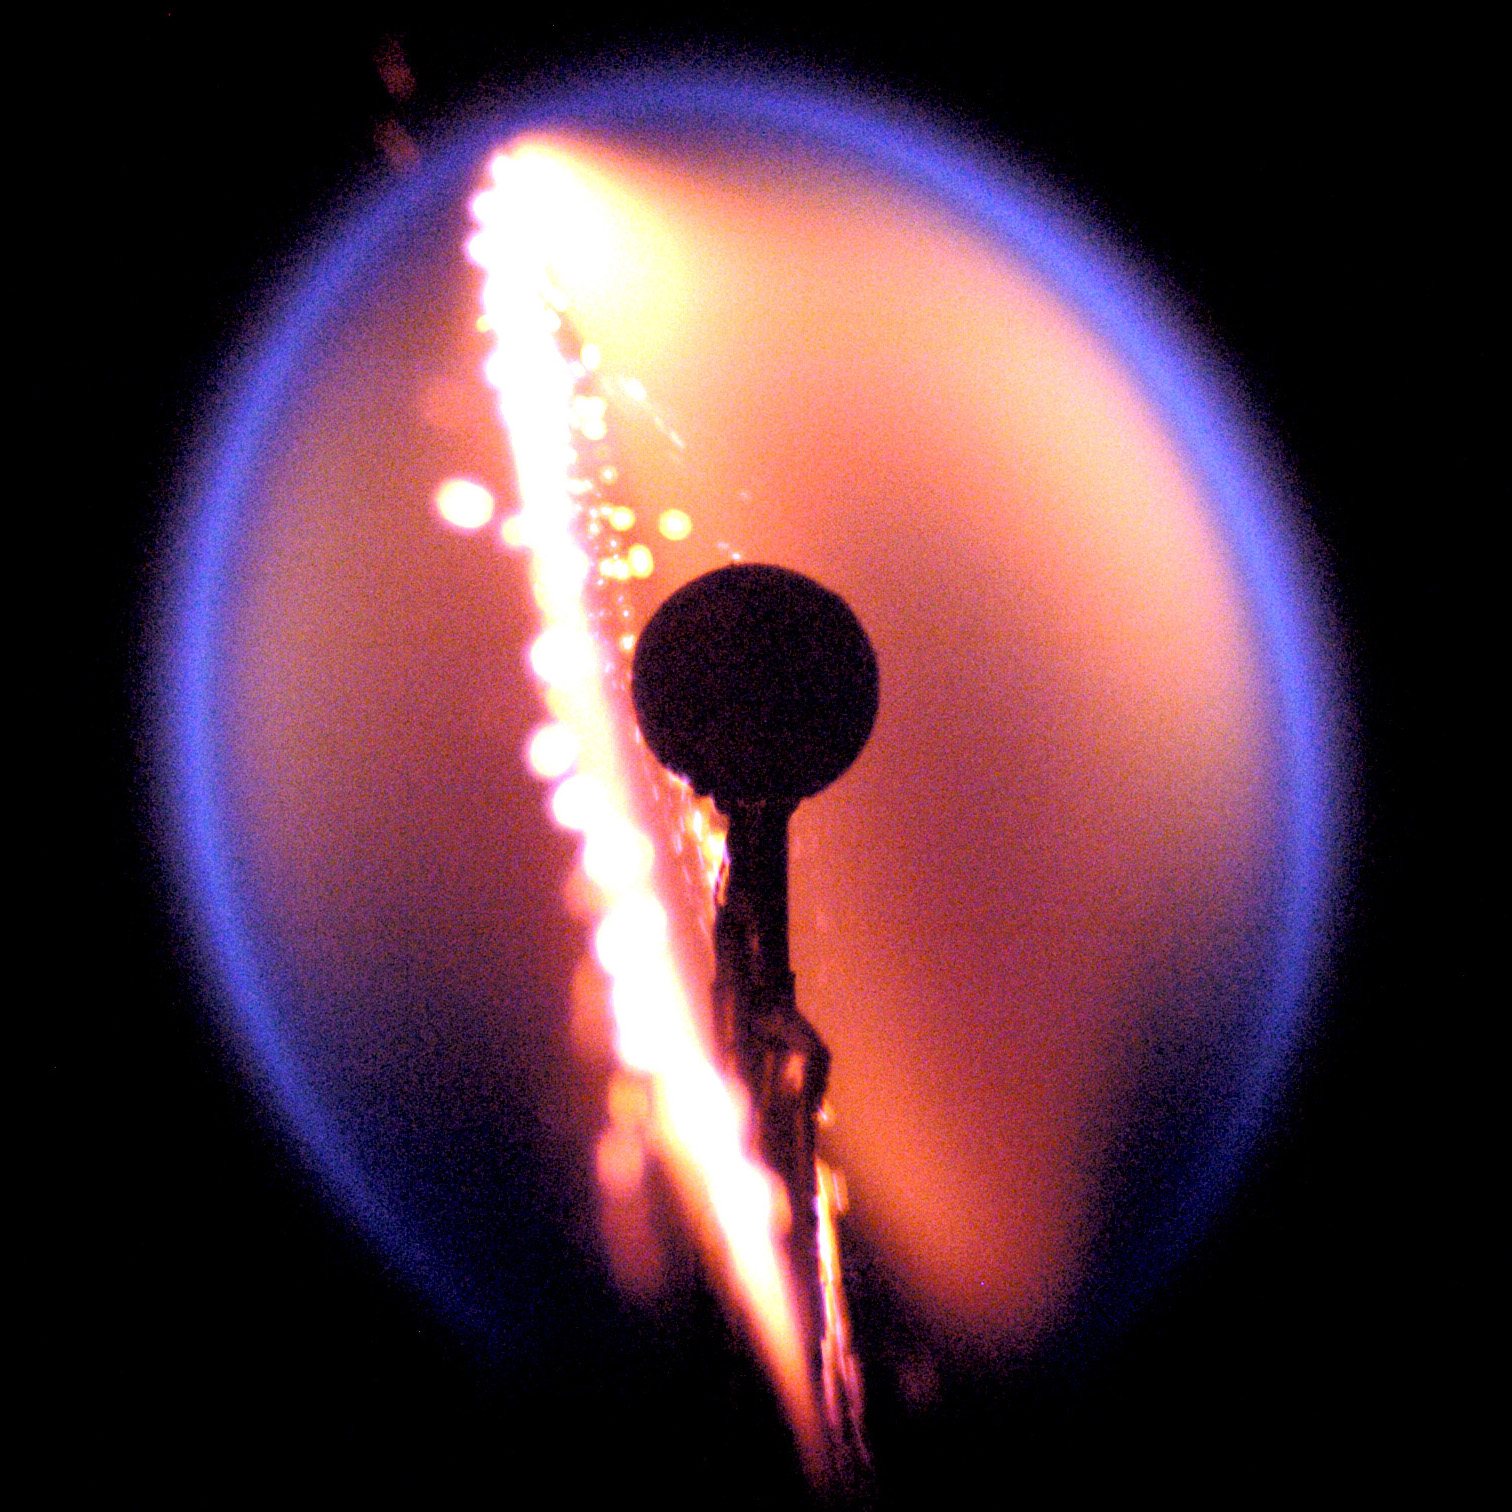 Flame Design expt. flame from a precursor drop test conducted at NASA Glenn Credits NASA